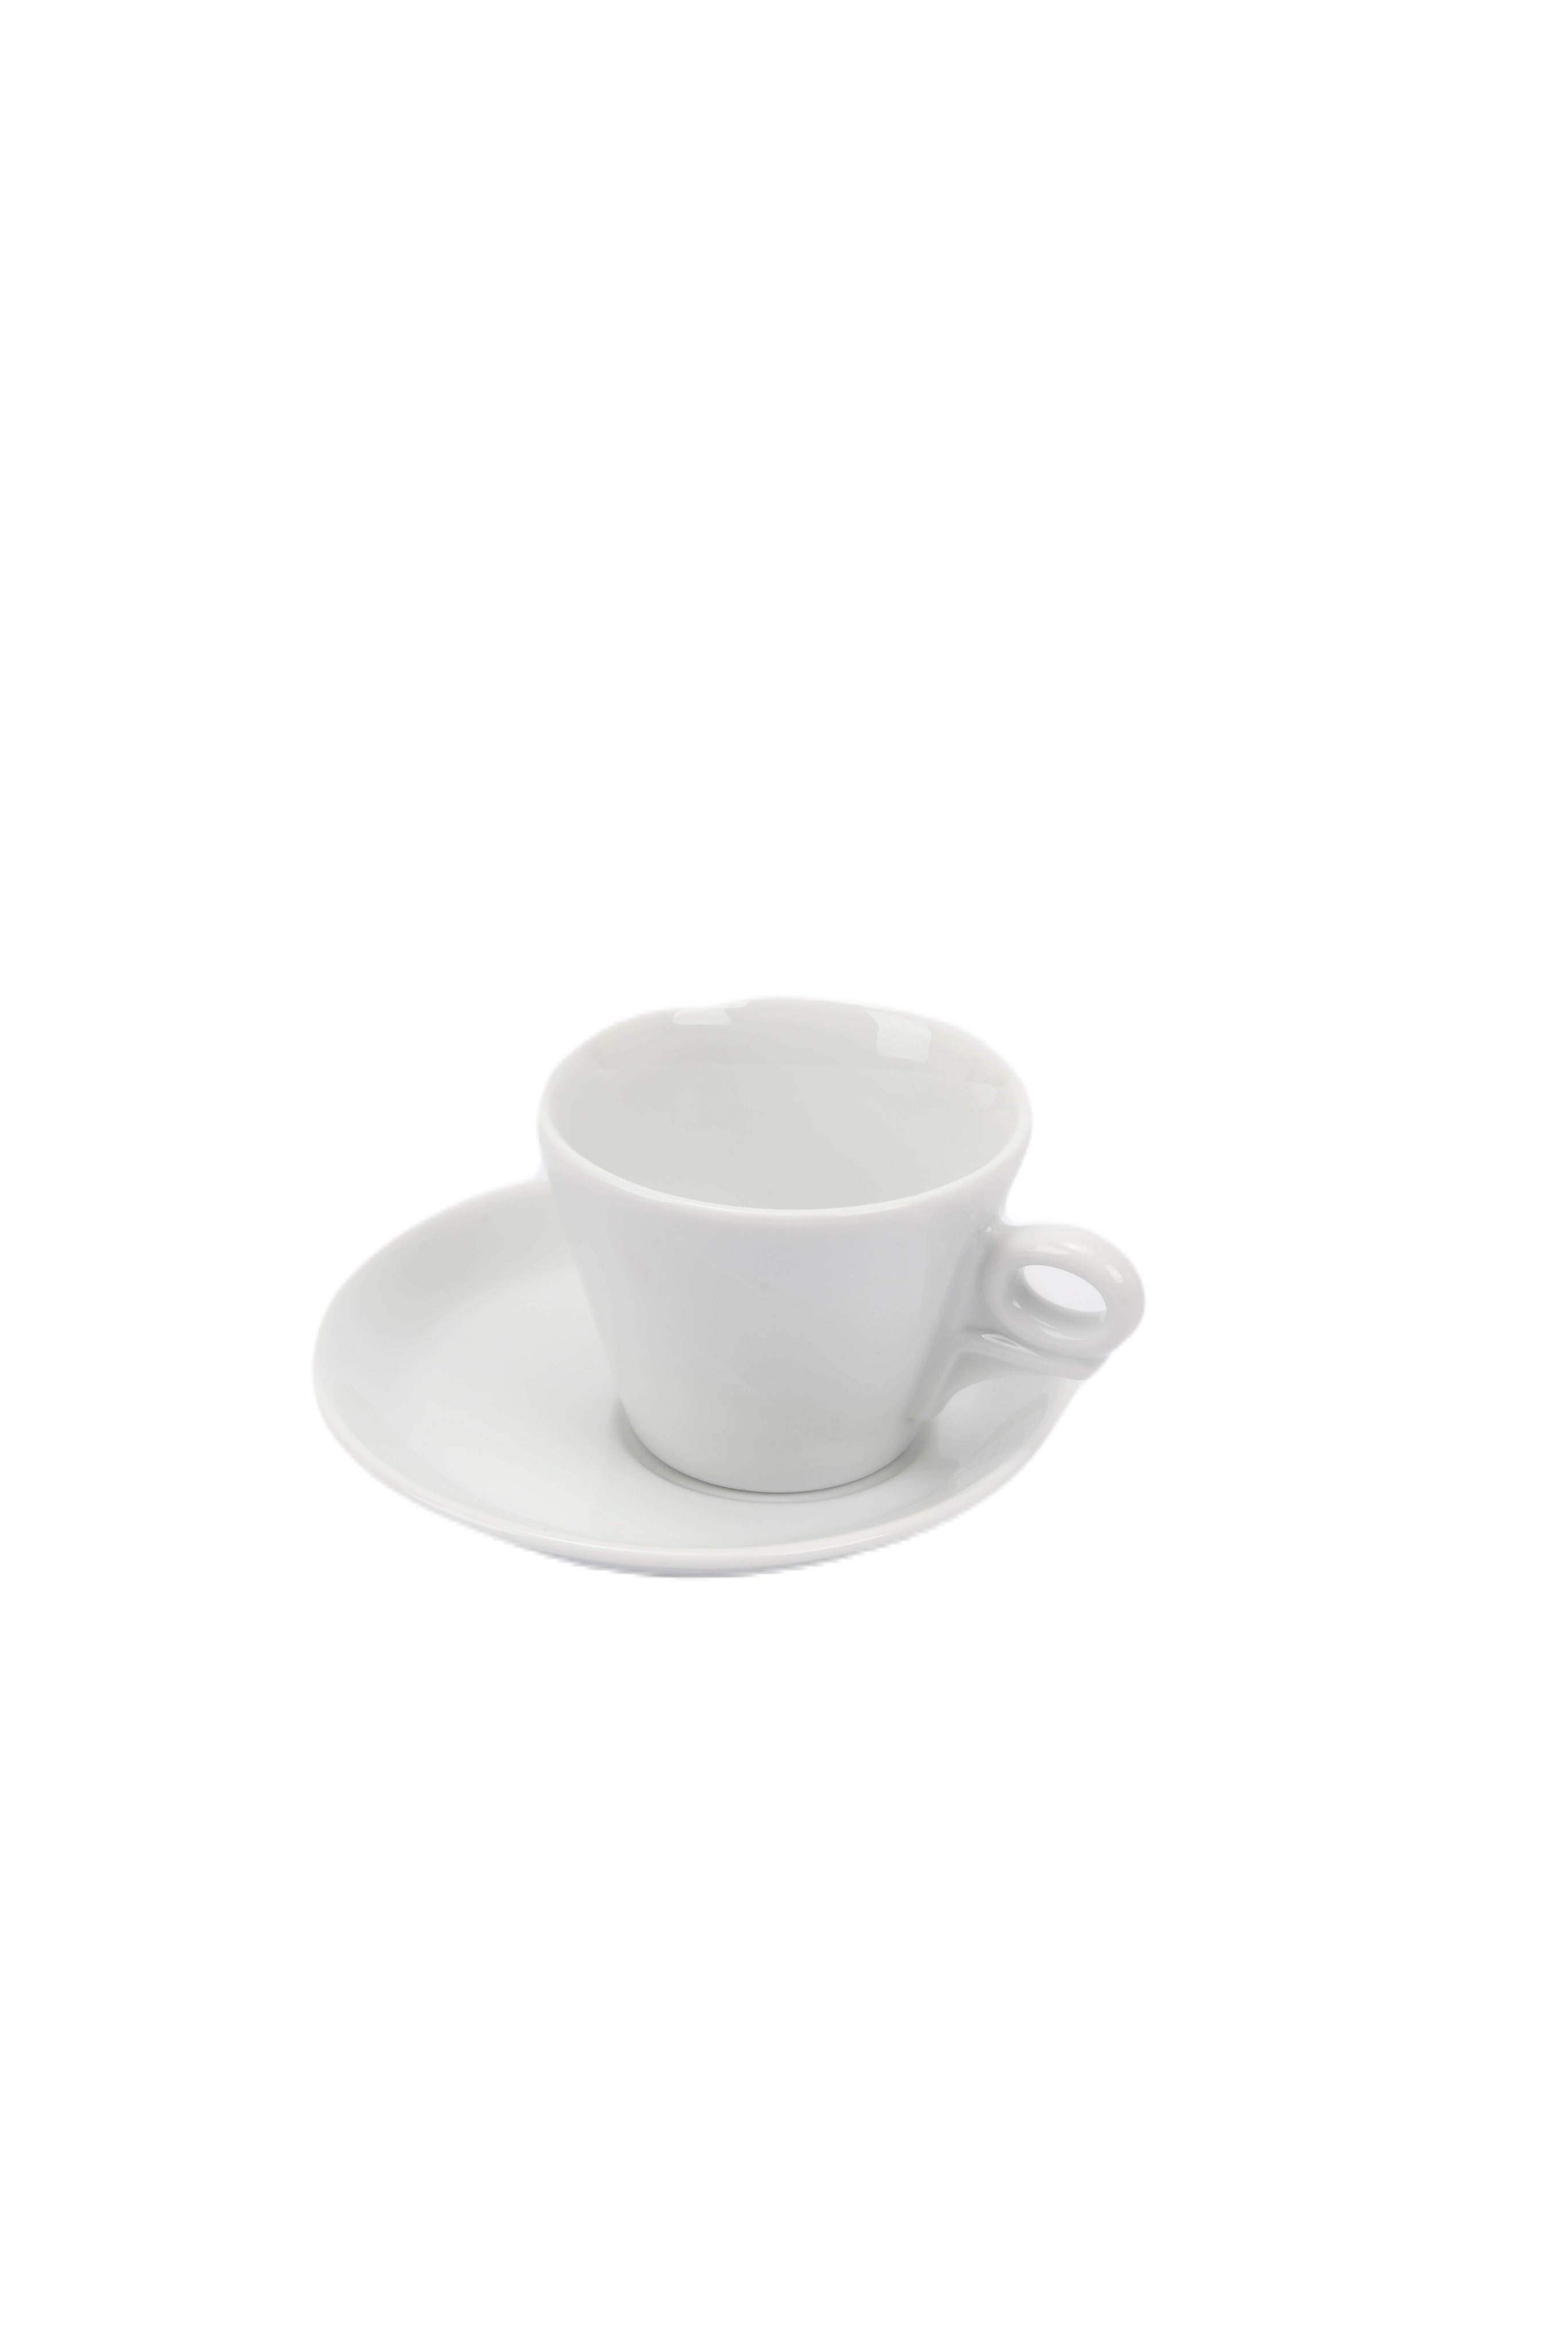 ANCAP Giotto Porselen Cappuccino Fincan ve Tabak 6’lı Takımı - 180 ml